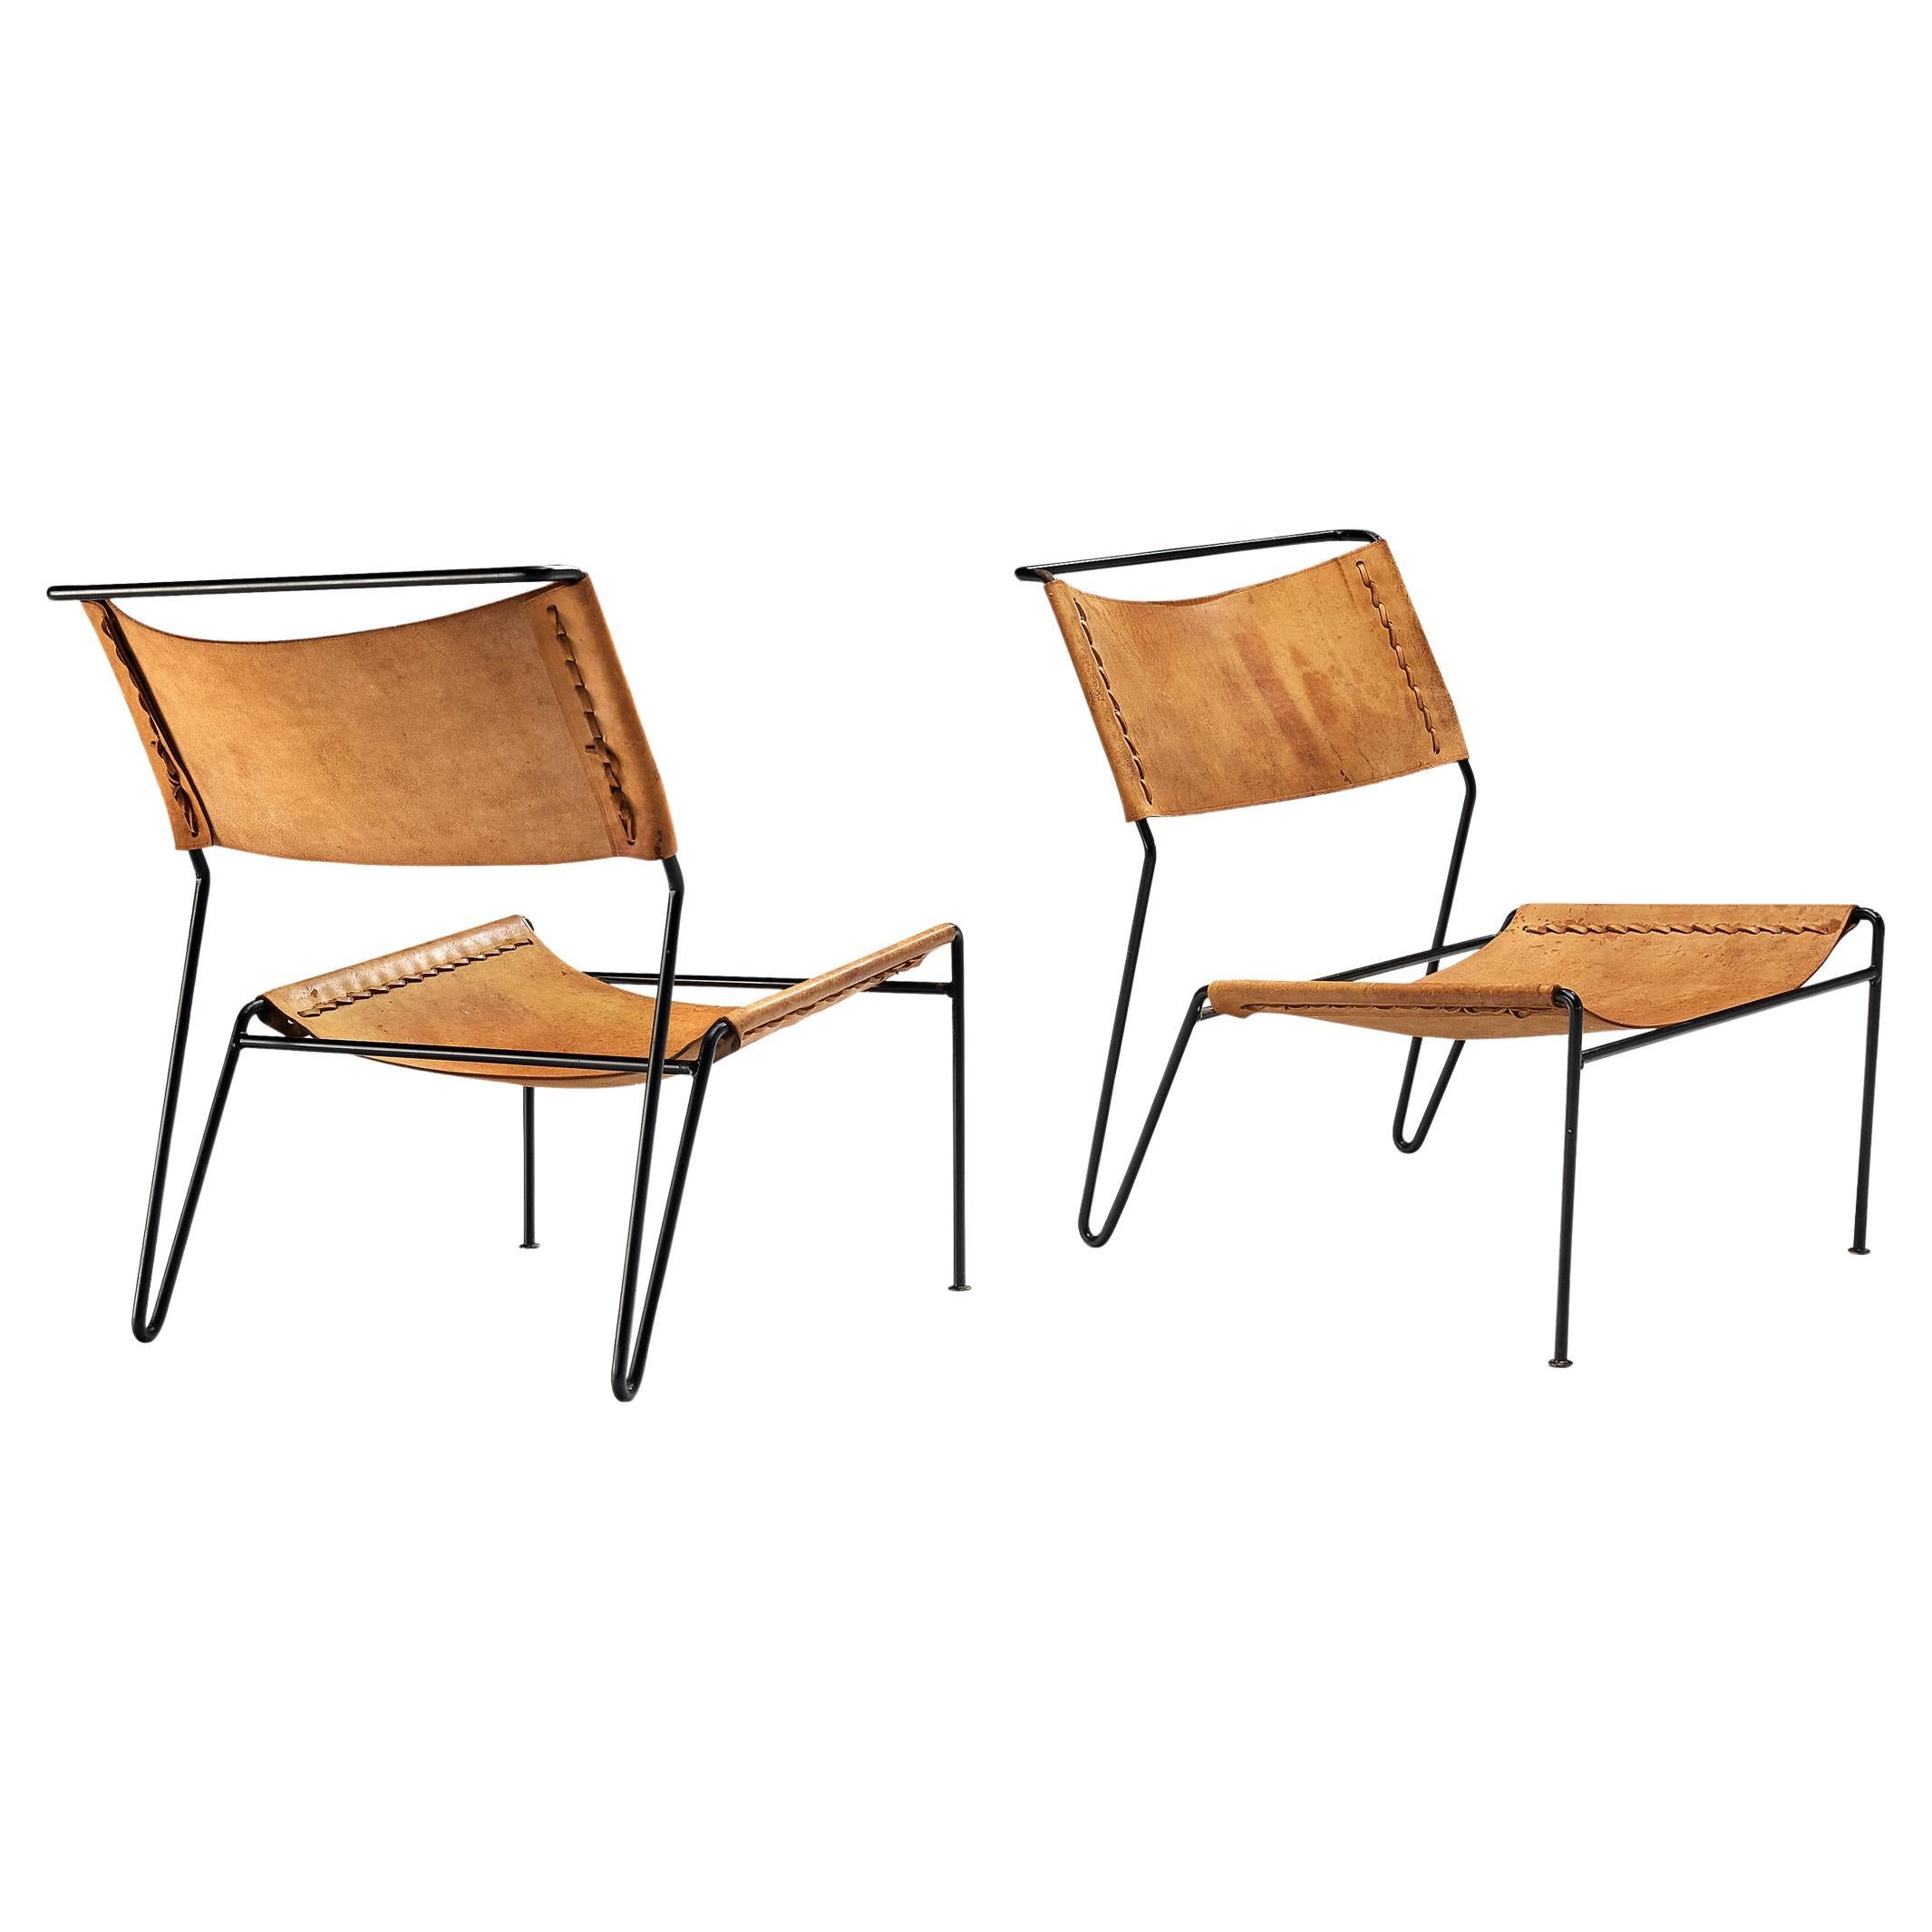 A. A. Dolleman für Metz & Co. Ein Paar modernistische Sessel aus Leder